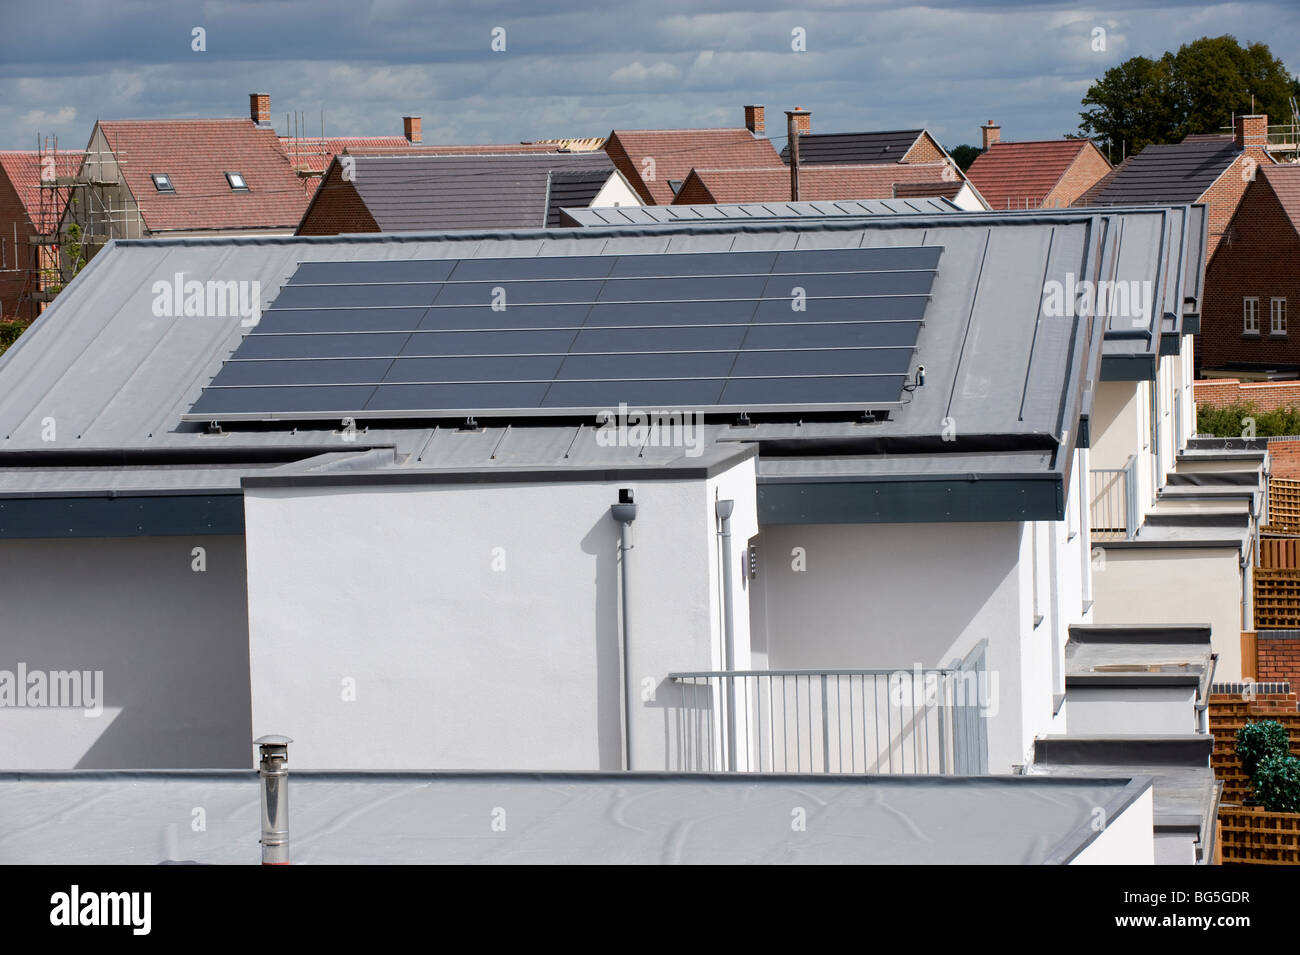 Dach montierte Photovoltaik-Solarzellen auf einer Neubausiedlung Stockfoto